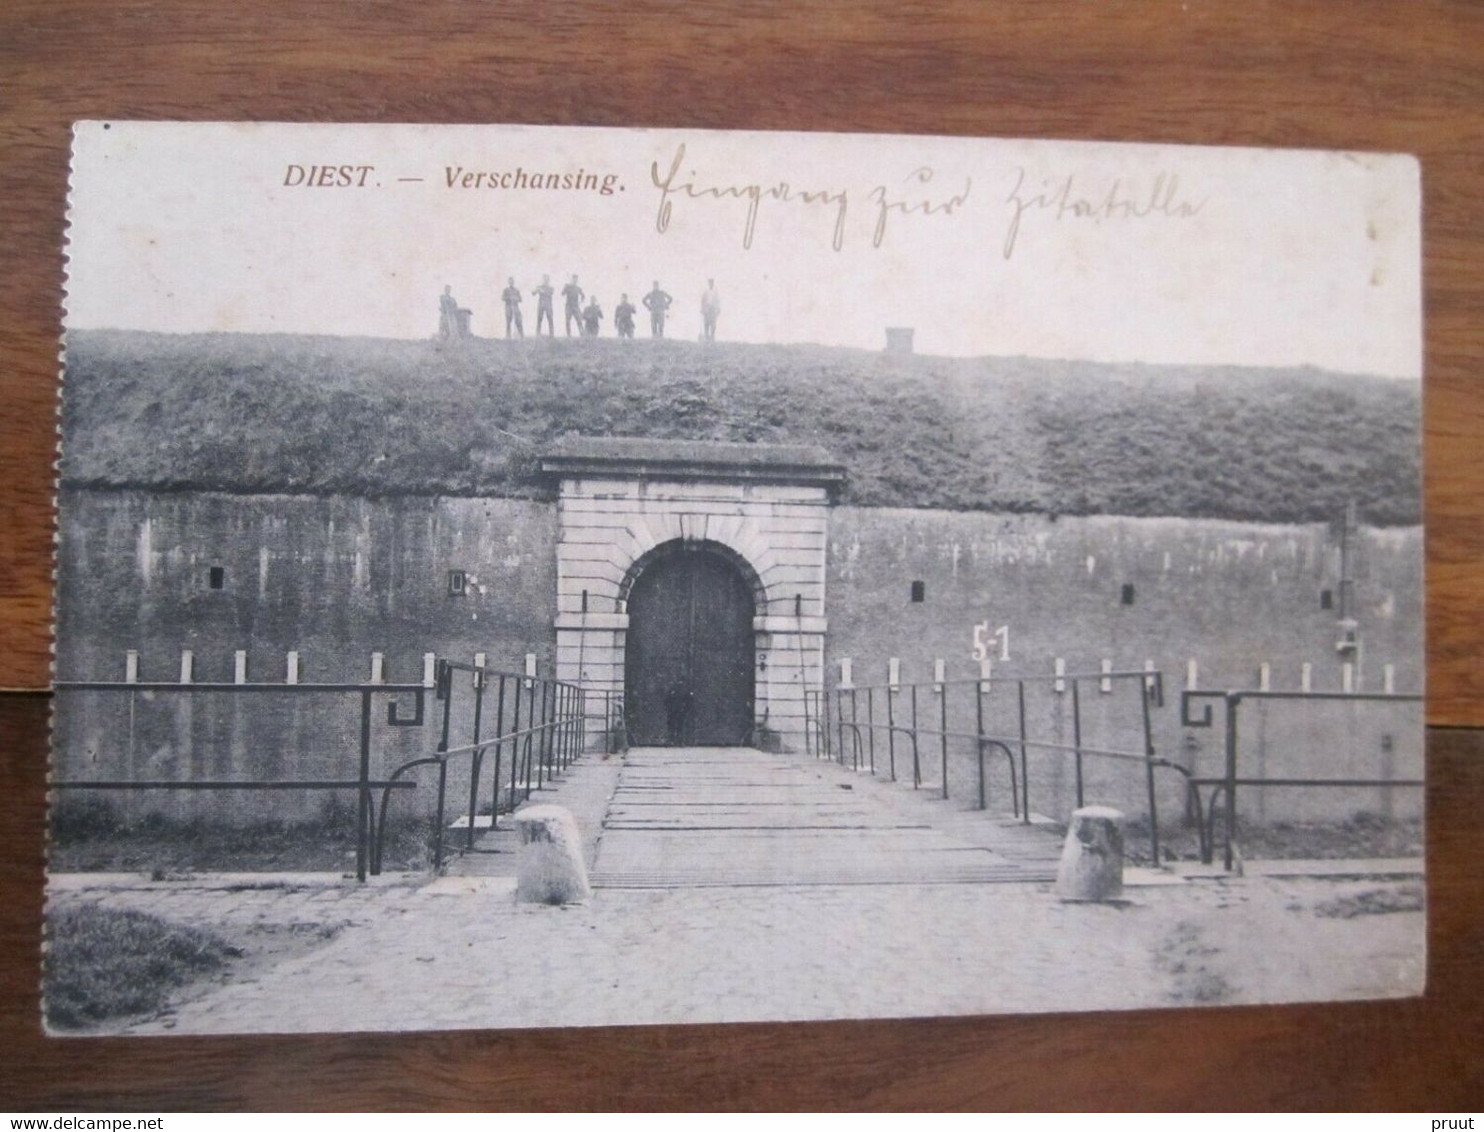 Diest Verschansing - Feldpost Zivilgefangenenlager 1917 ZELDZAME UITGAVE WW 1 - Diest